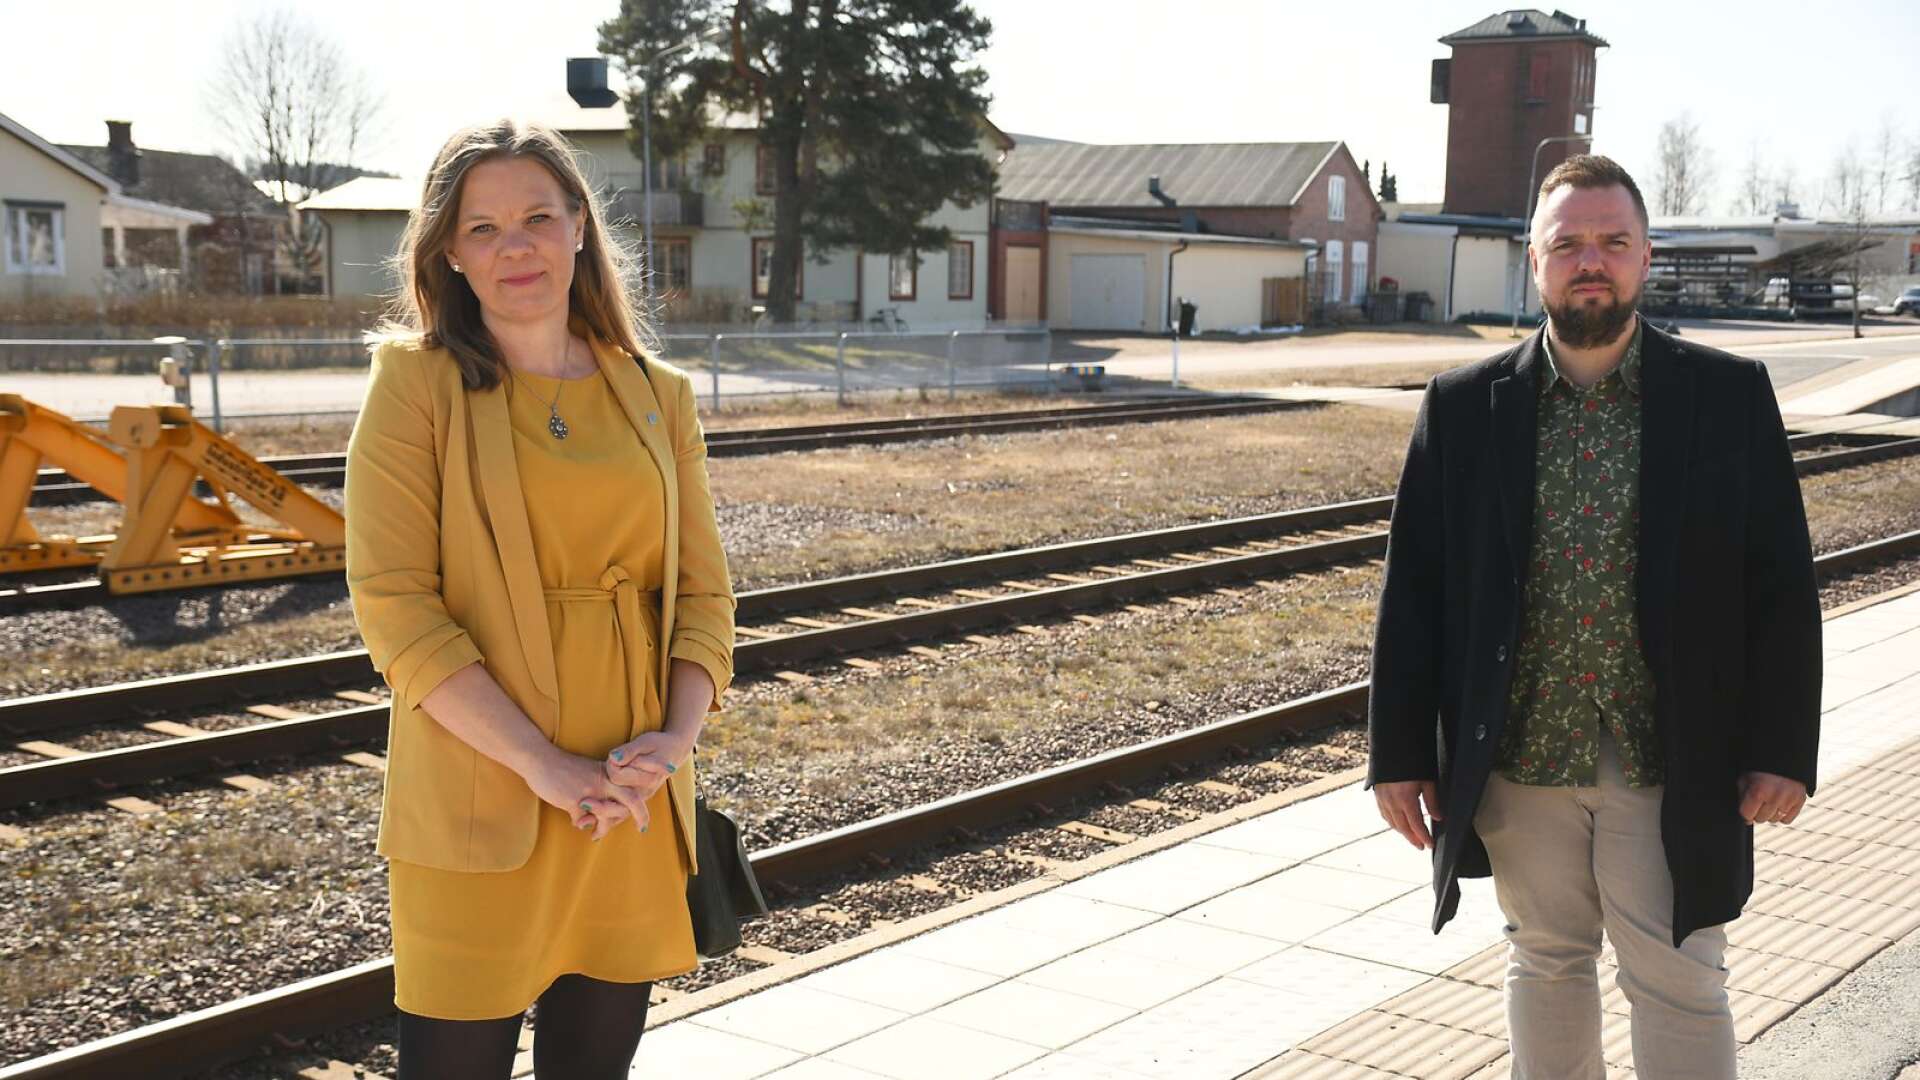 ”Ska Fryksdalsbanan bli en modern järnvägslinje krävs en konstruktiv dialog med berörda kommuner. Därför efterlyser vi en bra diskussion”, säger Sunnes kommunalråd Kristina Lundberg (C) och Tobias Eriksson (S).